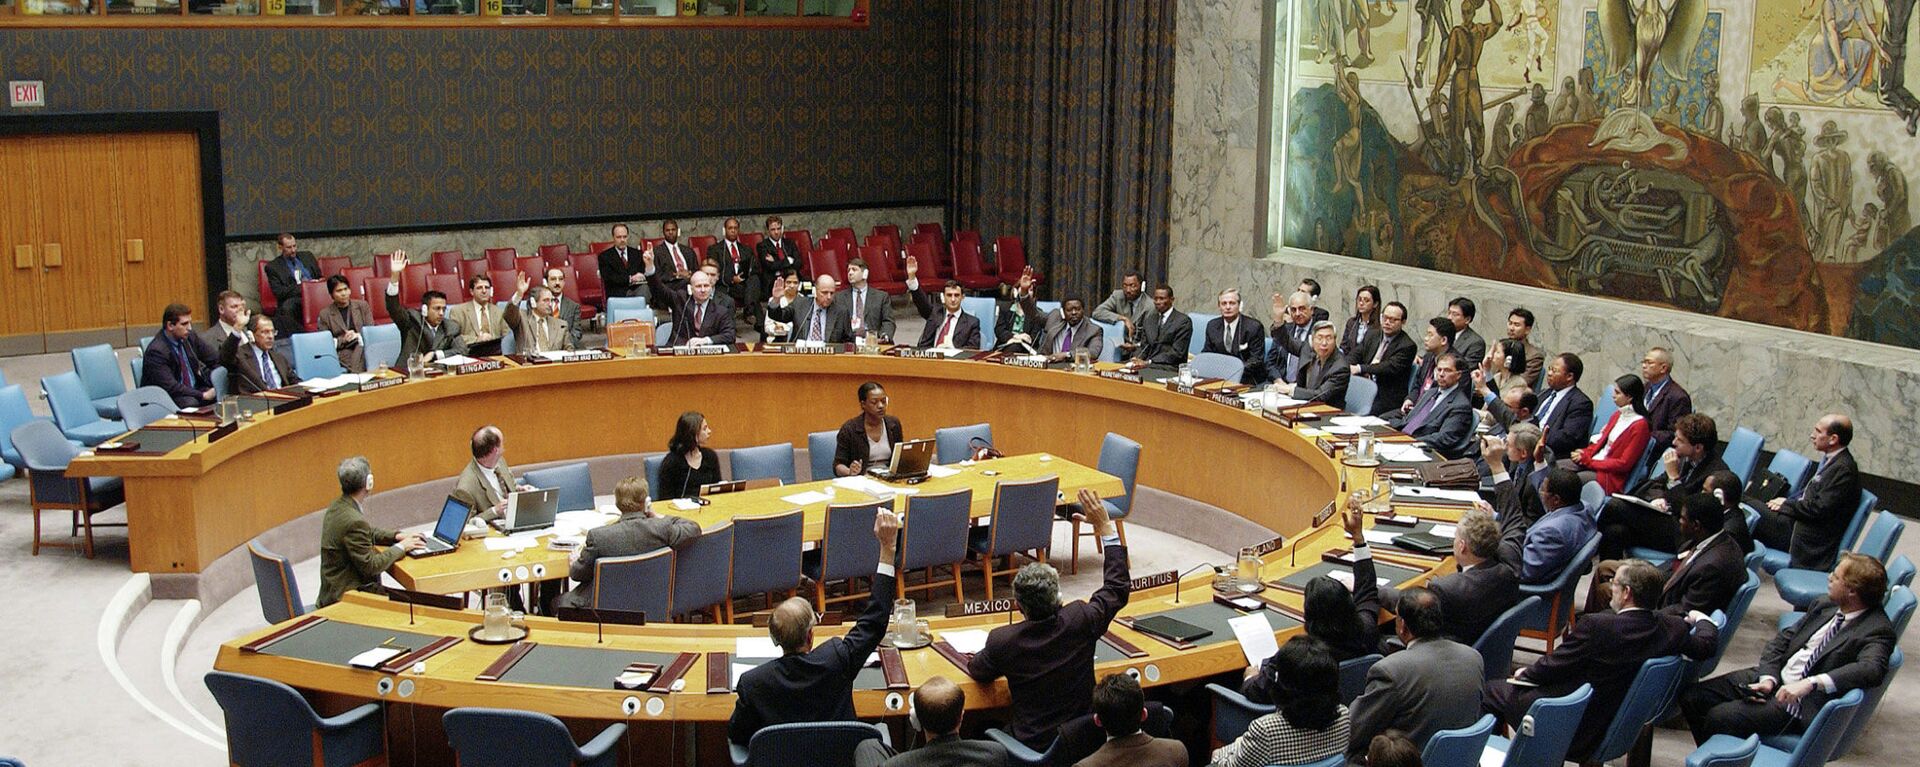 Заседание Совета Безопасности ООН - Sputnik Тоҷикистон, 1920, 18.11.2021